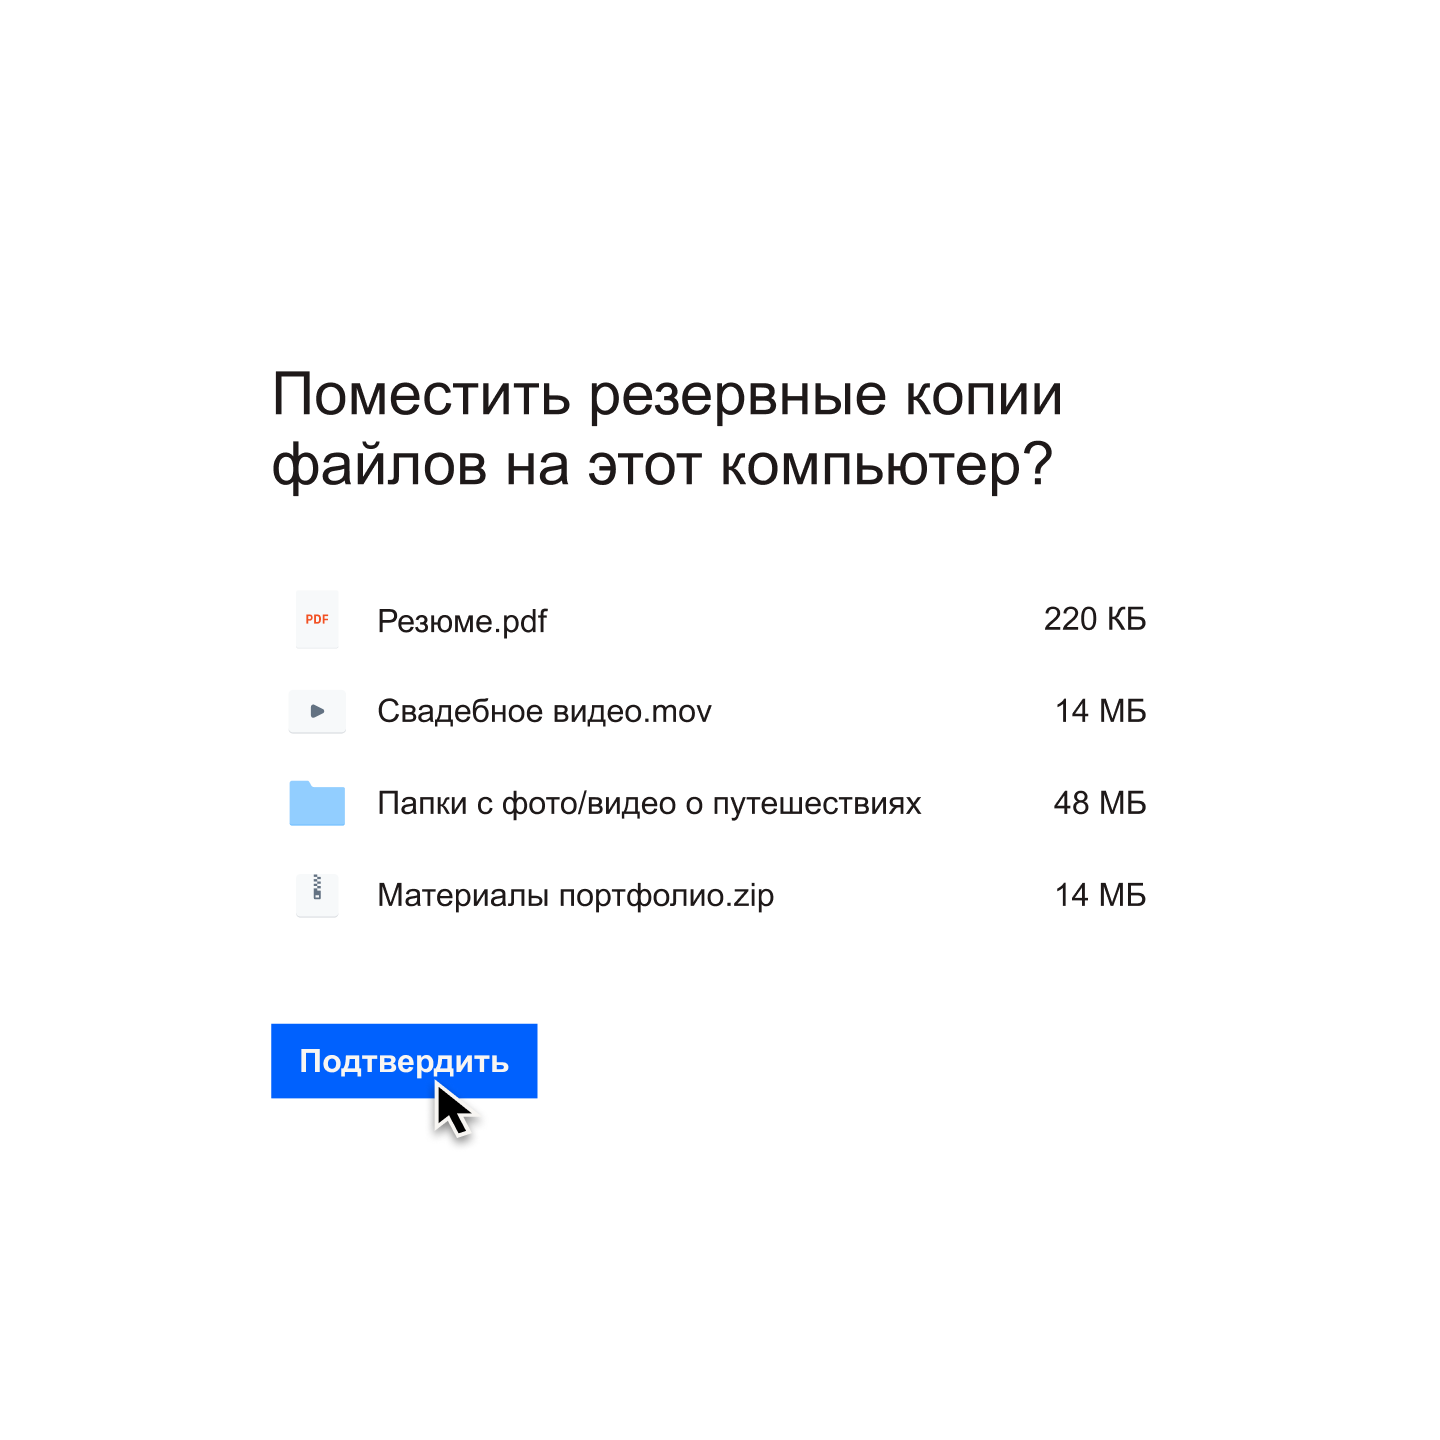 Пользователь нажимает на синюю кнопку «подтвердить», чтобы выбрать список файлов, резервные копии которых будут сохранены на его компьютере